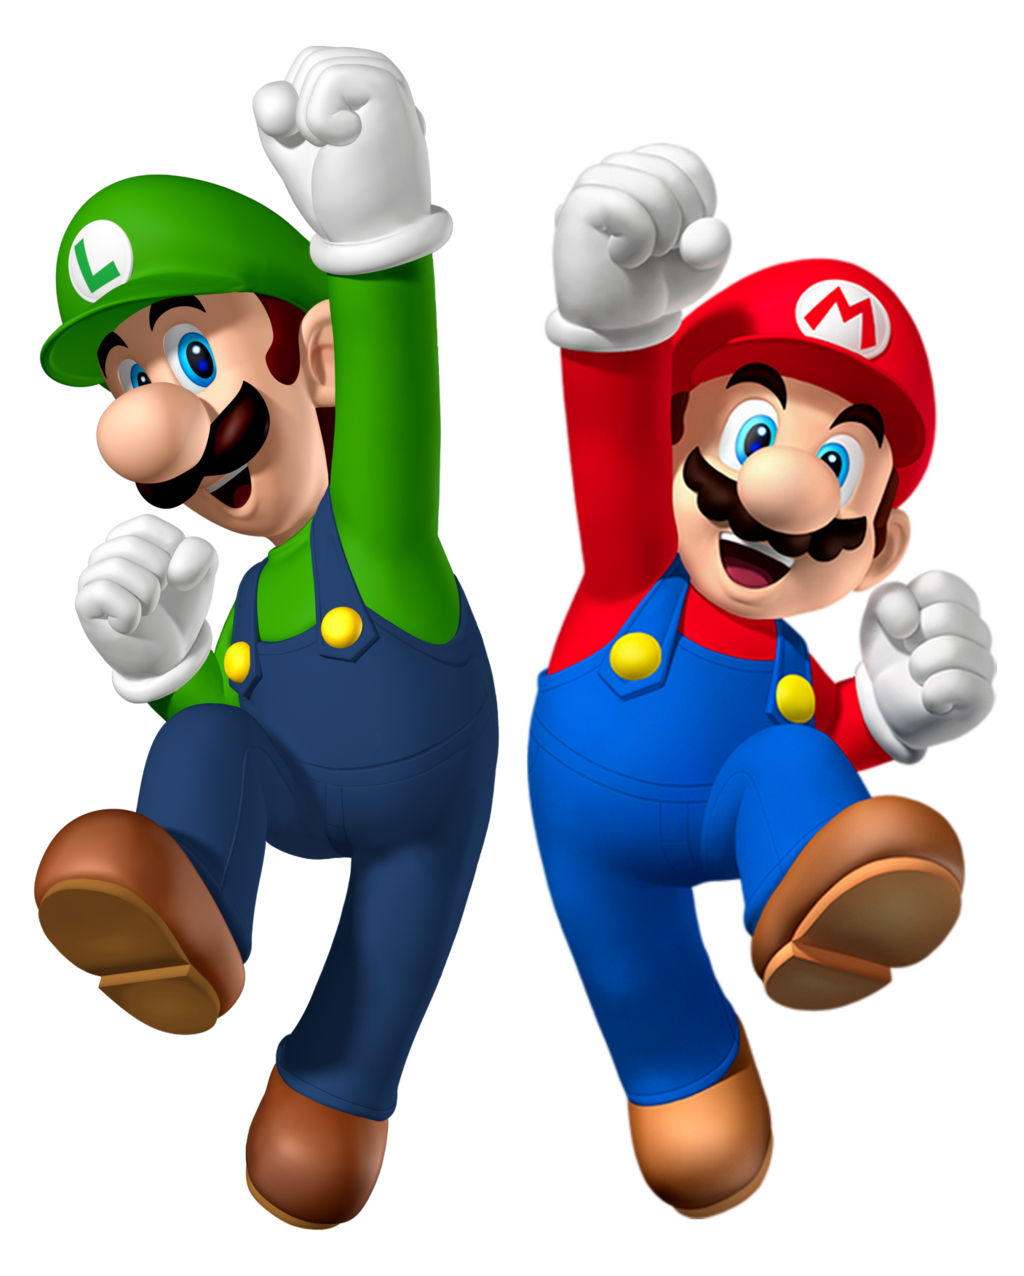 31+ Mario und luigi bilder , Mario And Luigi PNG Transparent Mario And Luigi.PNG Images. PlusPNG